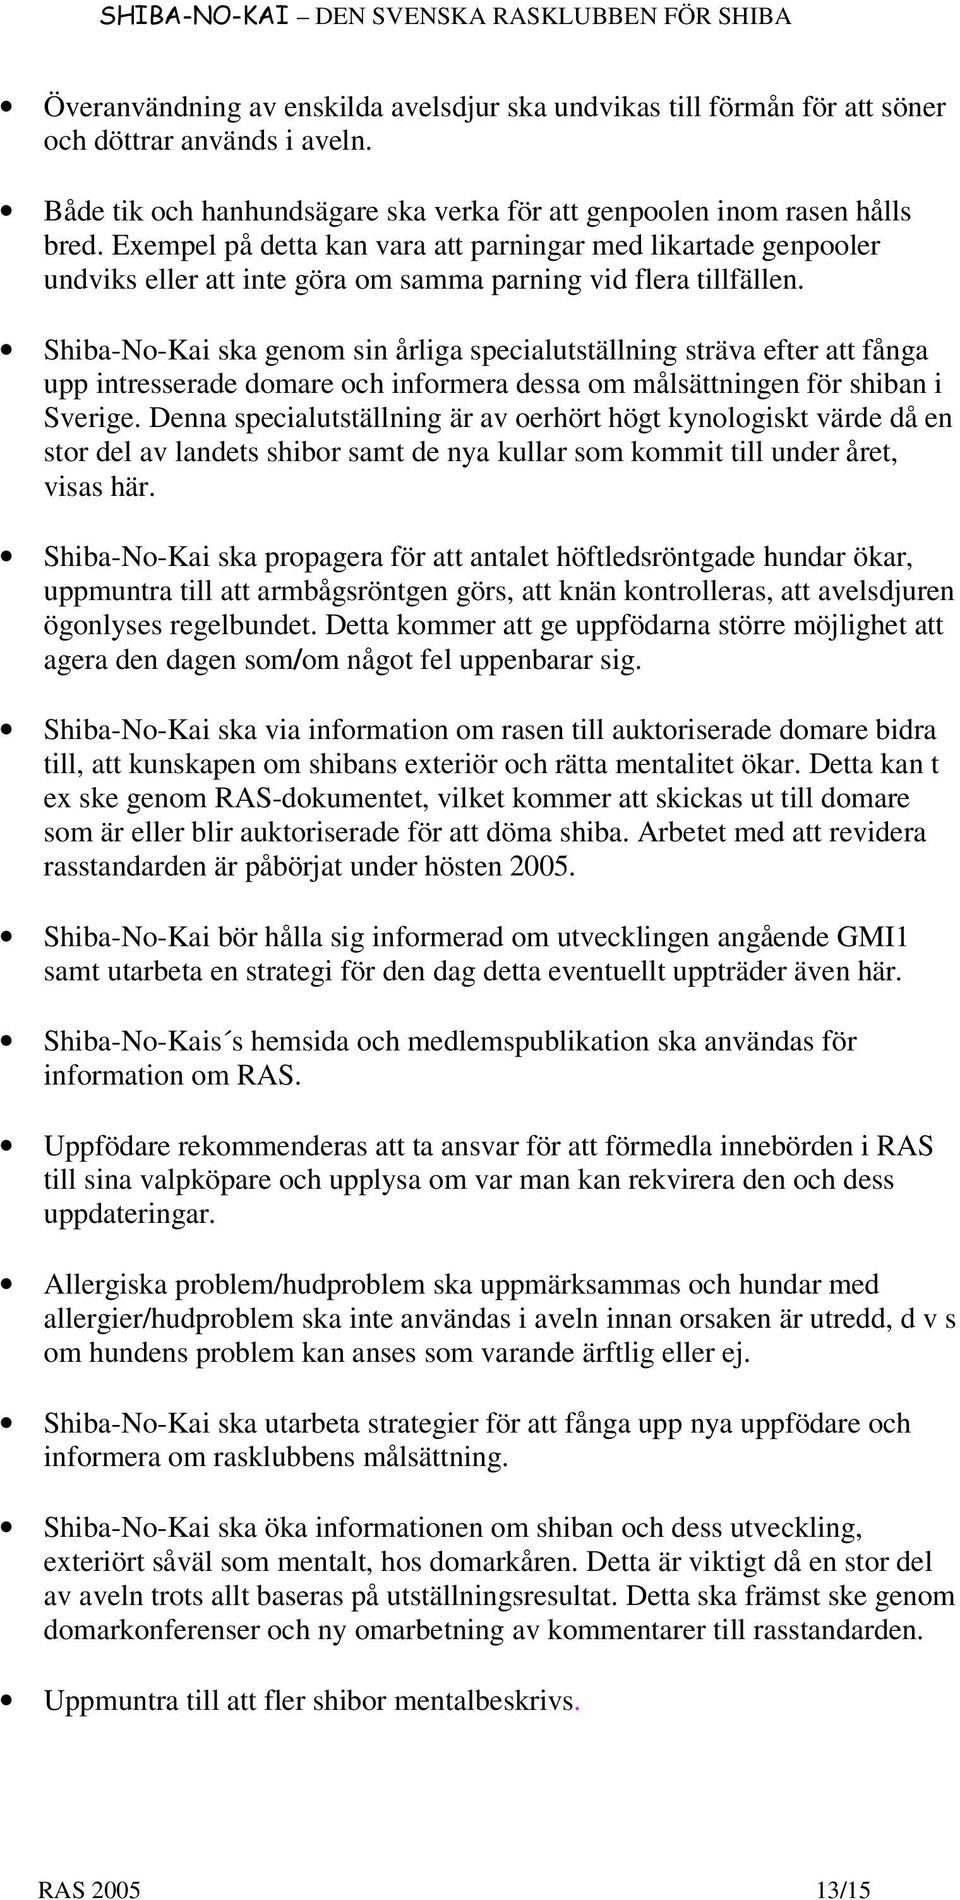 Shiba-No-Kai ska genom sin årliga specialutställning sträva efter att fånga upp intresserade domare och informera dessa om målsättningen för shiban i Sverige.